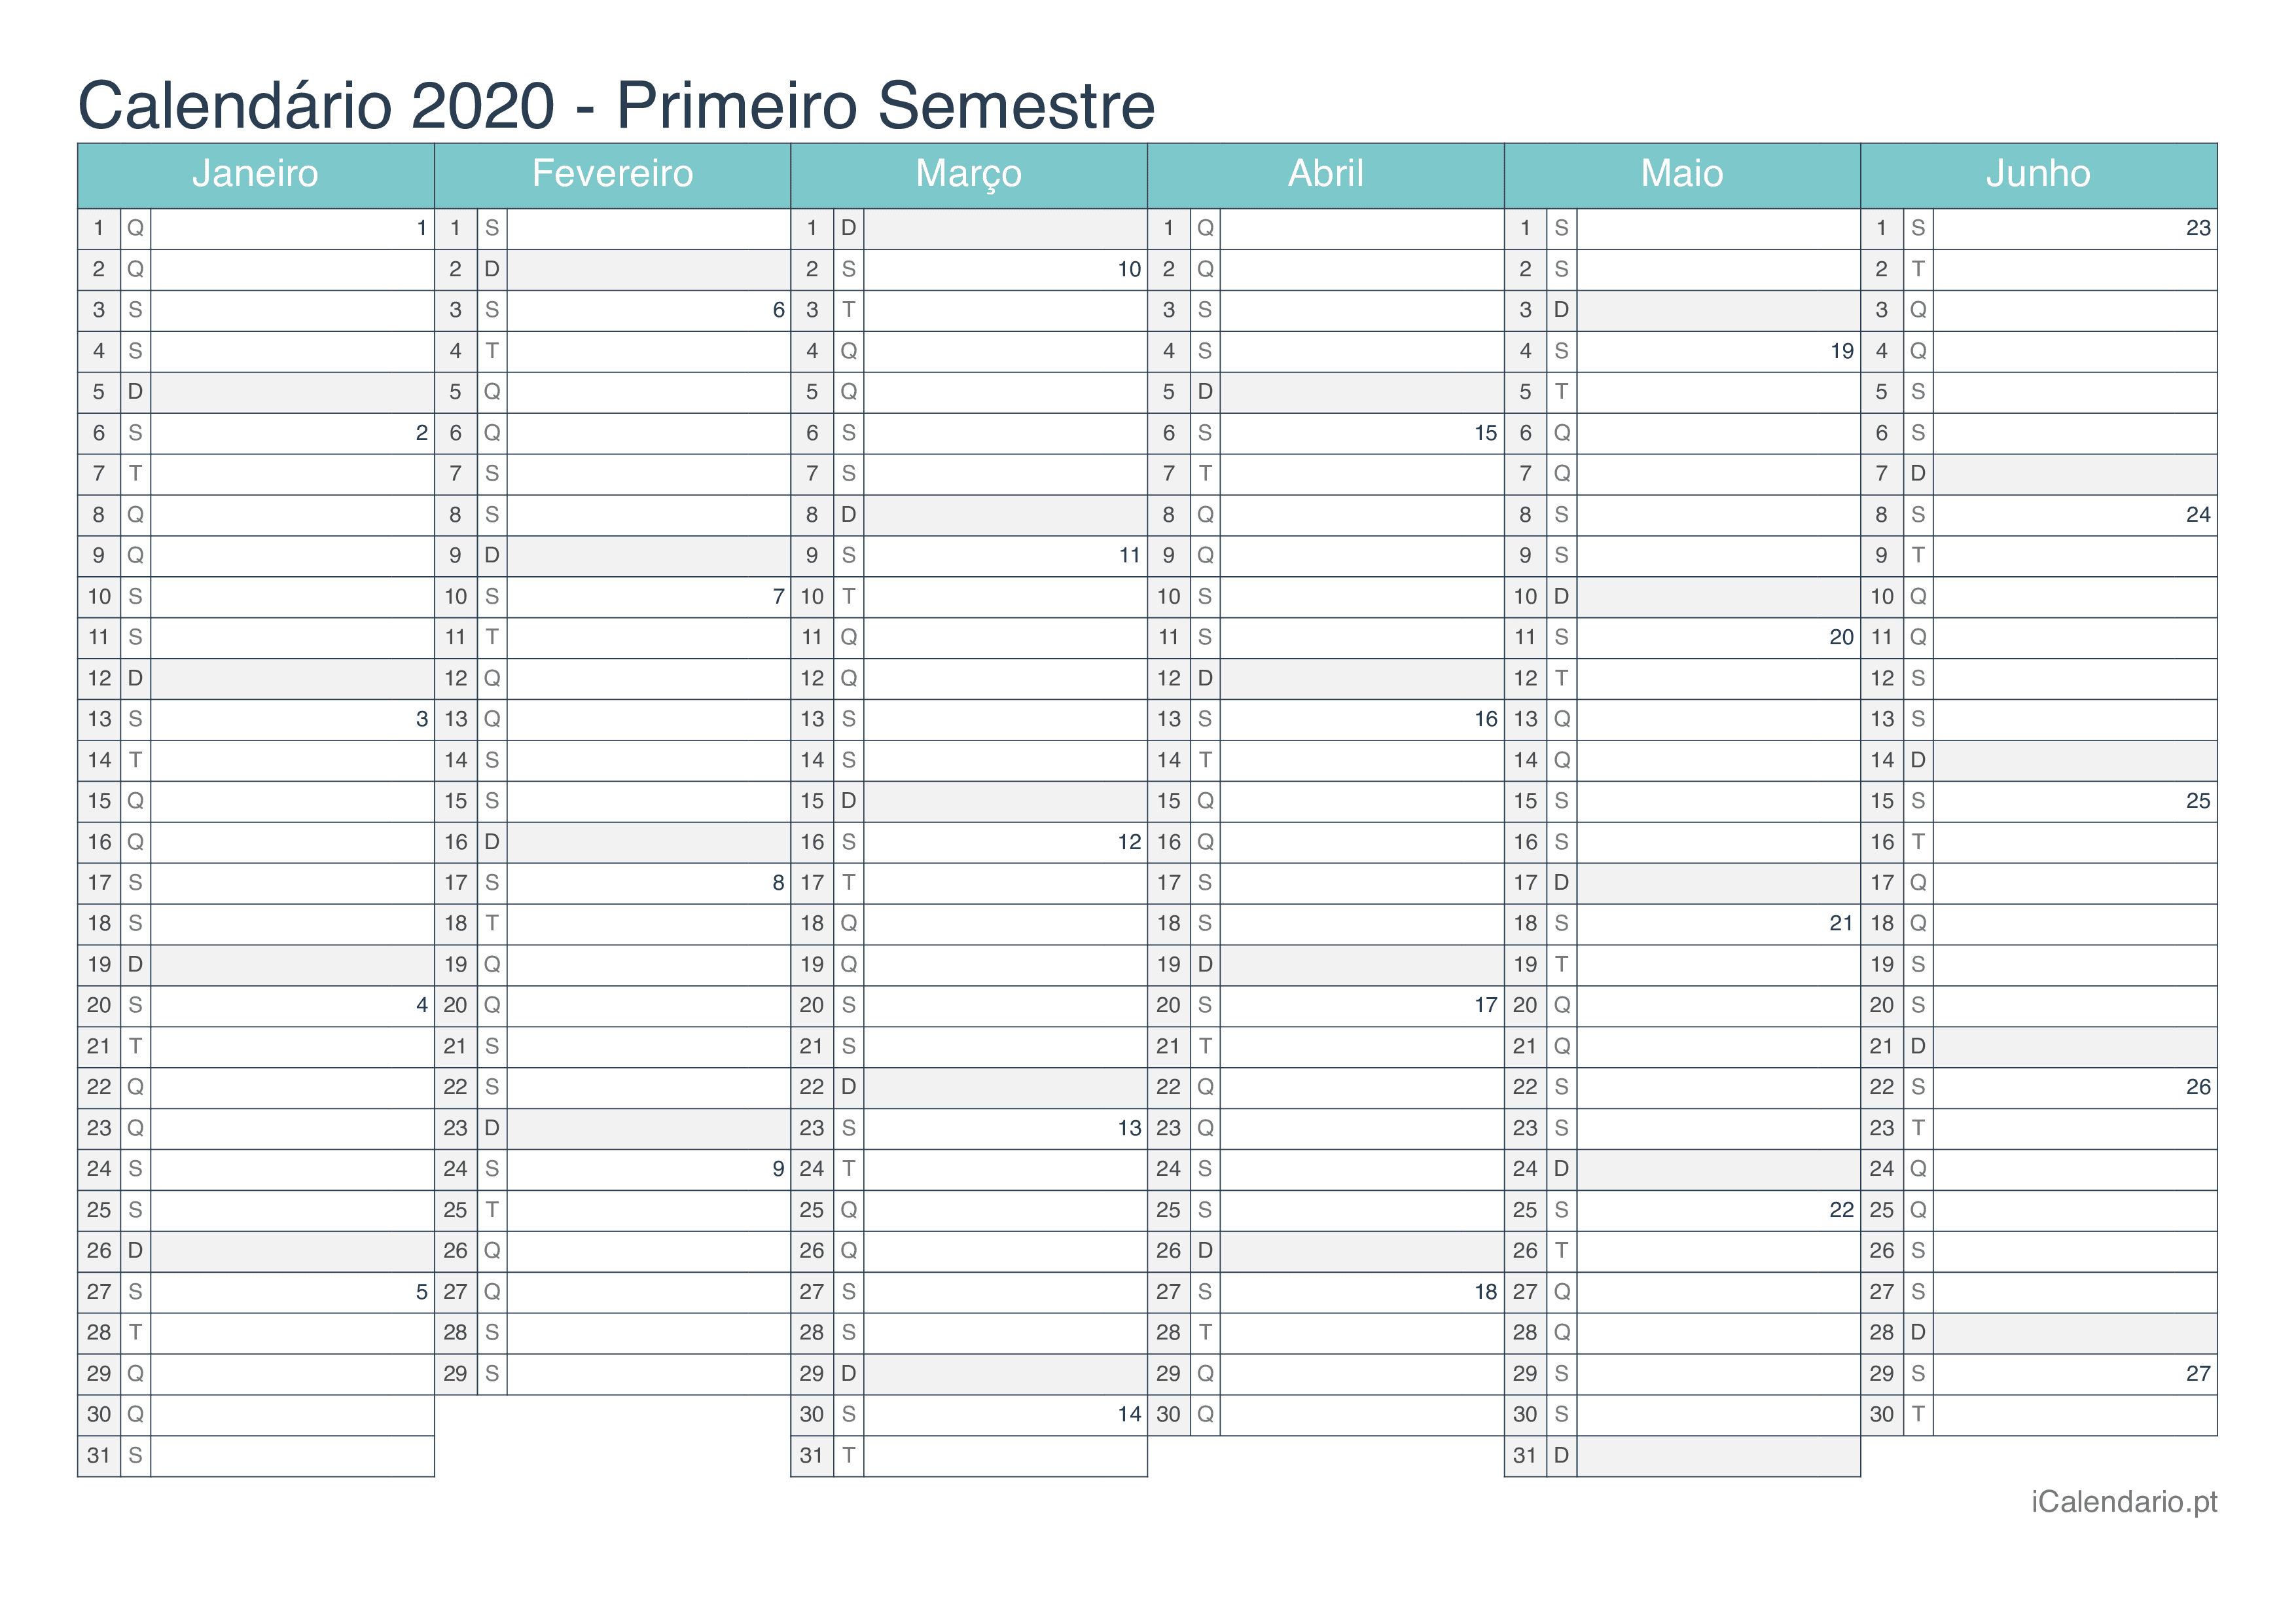 Calendário por semestre com números da semana 2020 - Turquesa